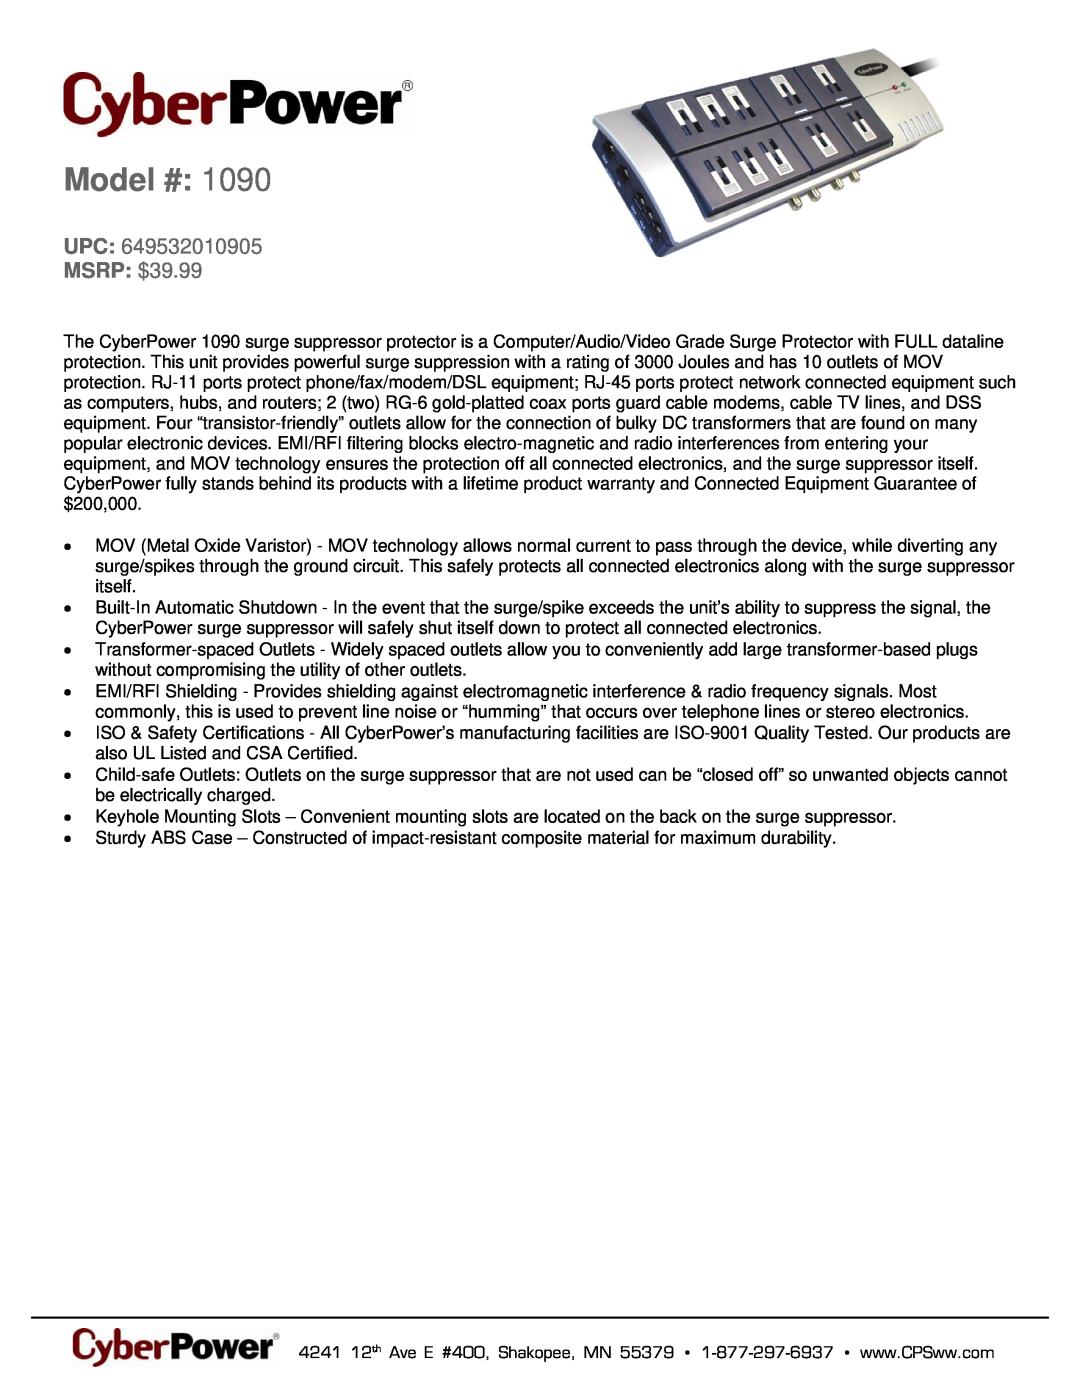 CyberPower Systems 649532010905 warranty Model #, MSRP $39.99 